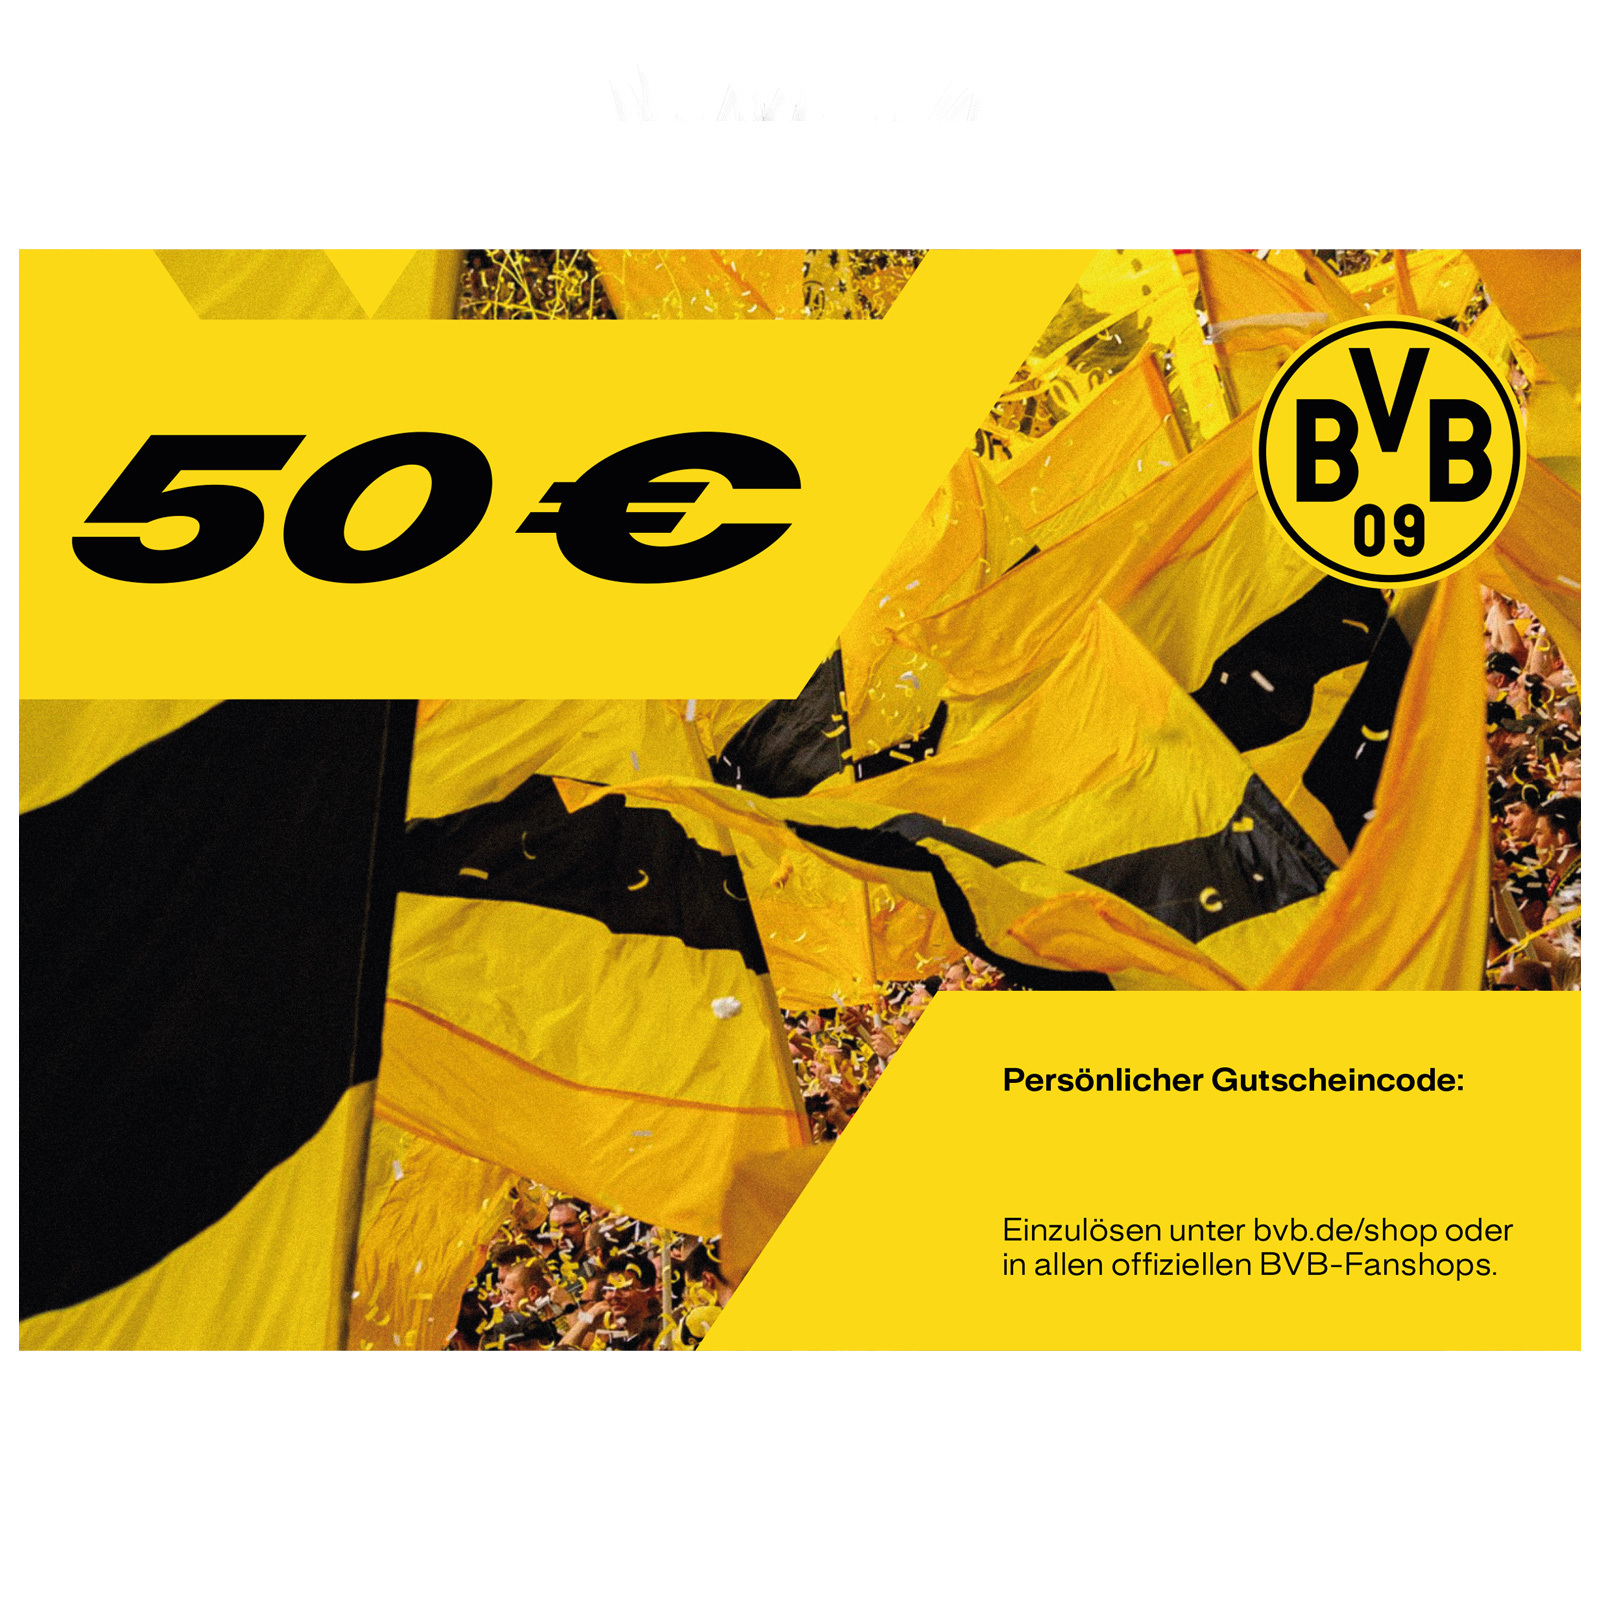 Offizieller BVB-Online Gutschein | FanShop 50,- | € | Fanartikel Gutscheine